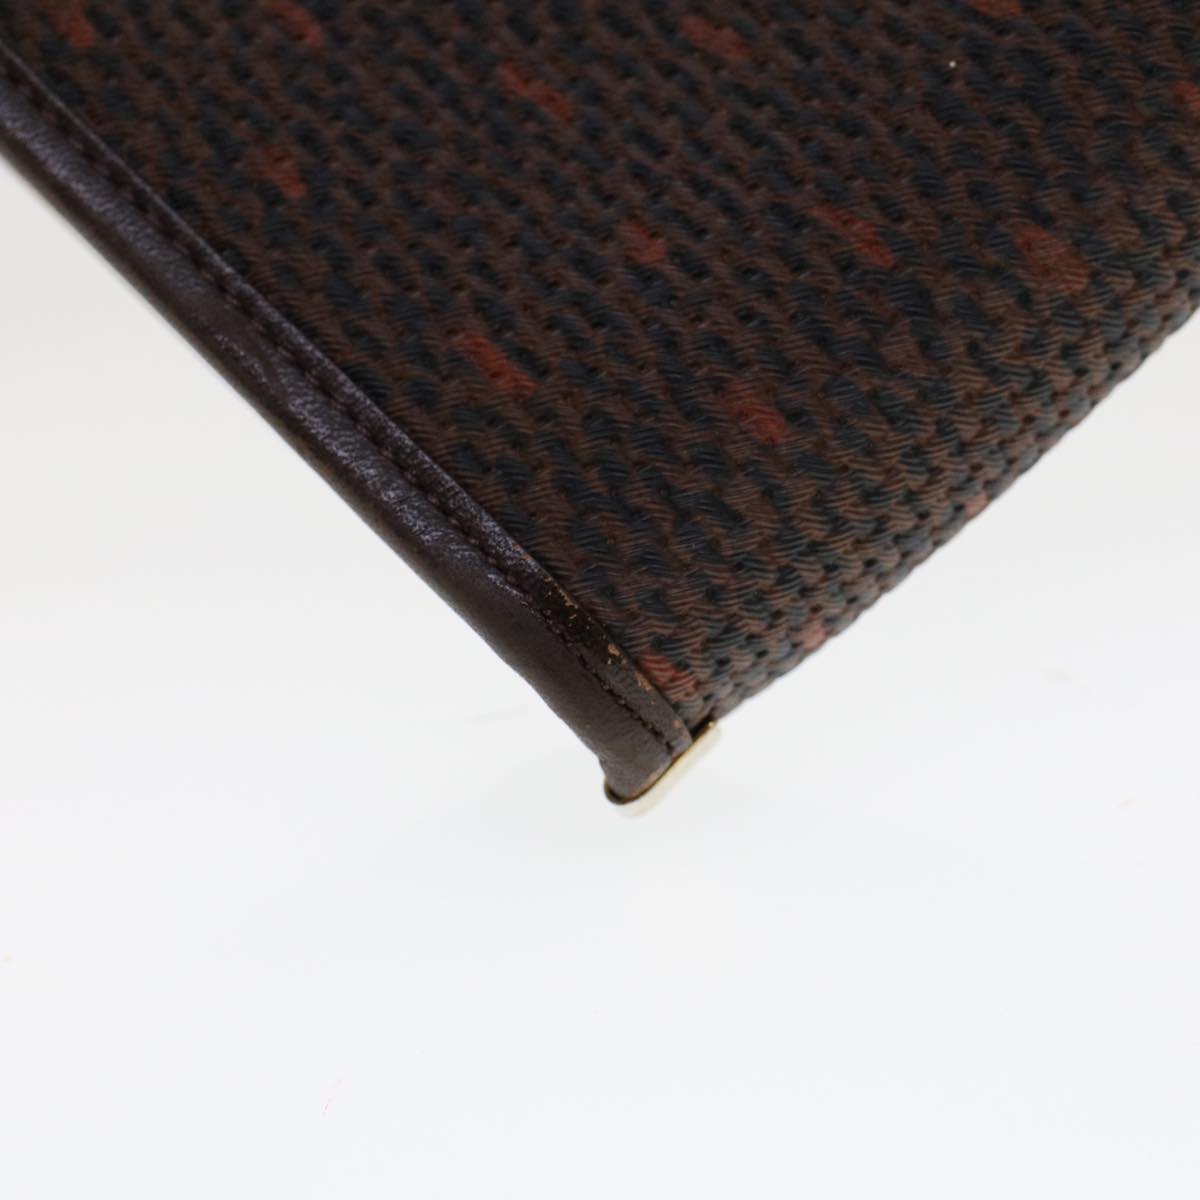 SAINT LAURENT Shoulder Bag PVC Leather Brown Auth bs6214